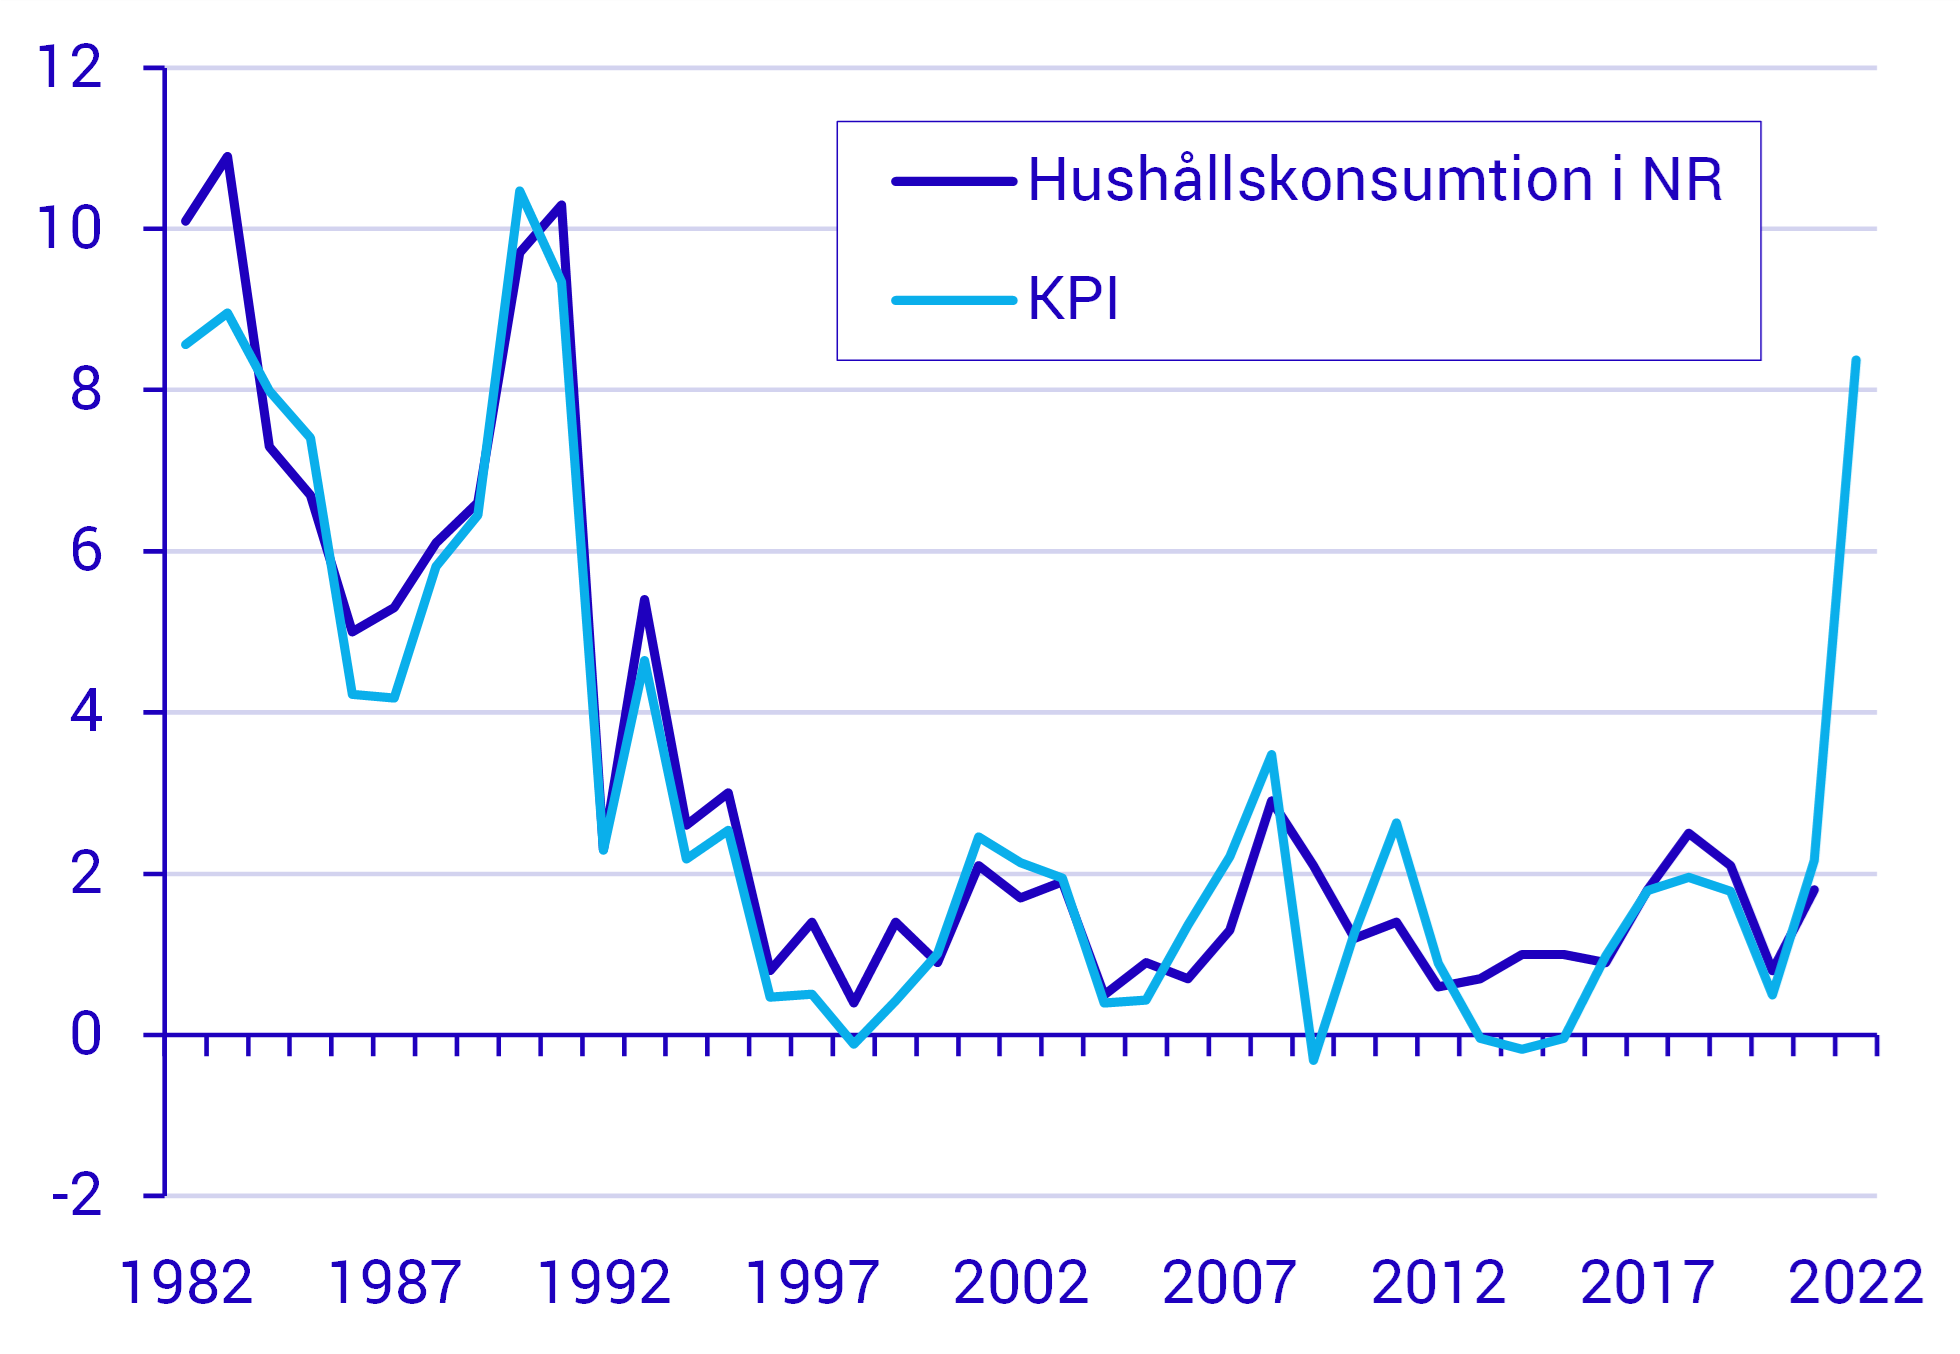 Huko-deflatorn och KPI ligger nära varandra men följs inte exakt Prisförändring hushållskonsumtion i NR (Huko-deflatorn) samt KPI, procent jämfört med föregående år